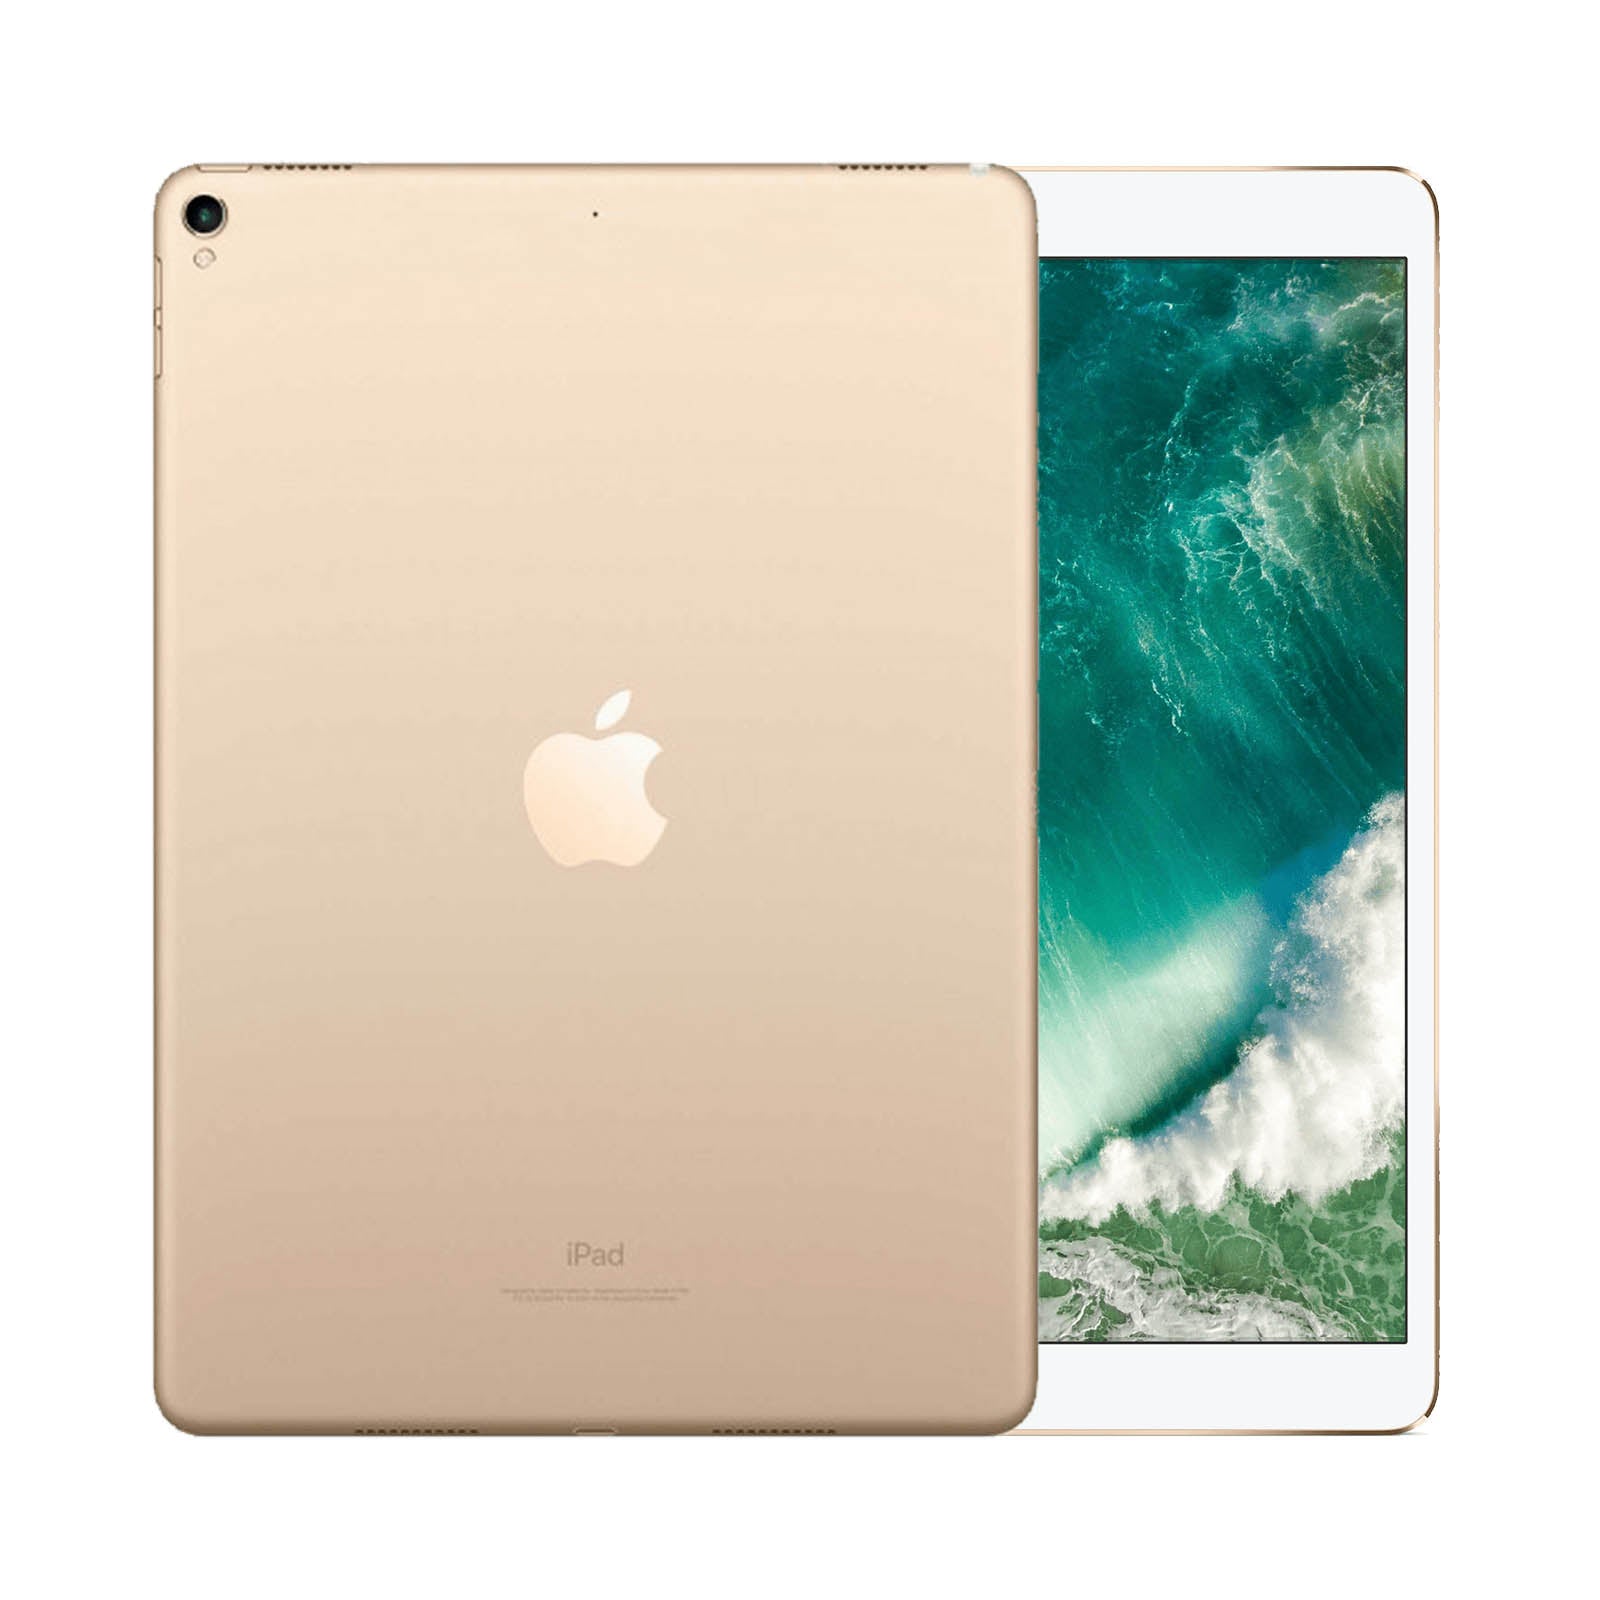 iPad Pro 10.5 Inch 256GB WiFi Gold Gut WiFi